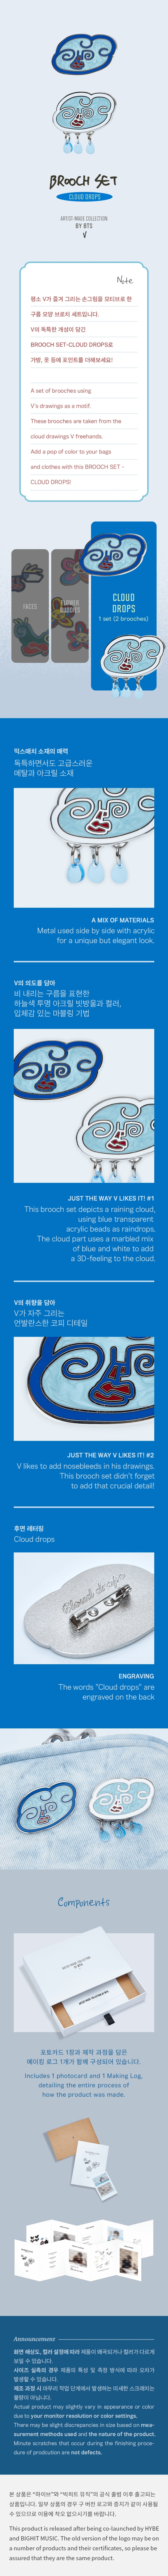 BTS [V] مجموعة بروش (Cloud Drops)